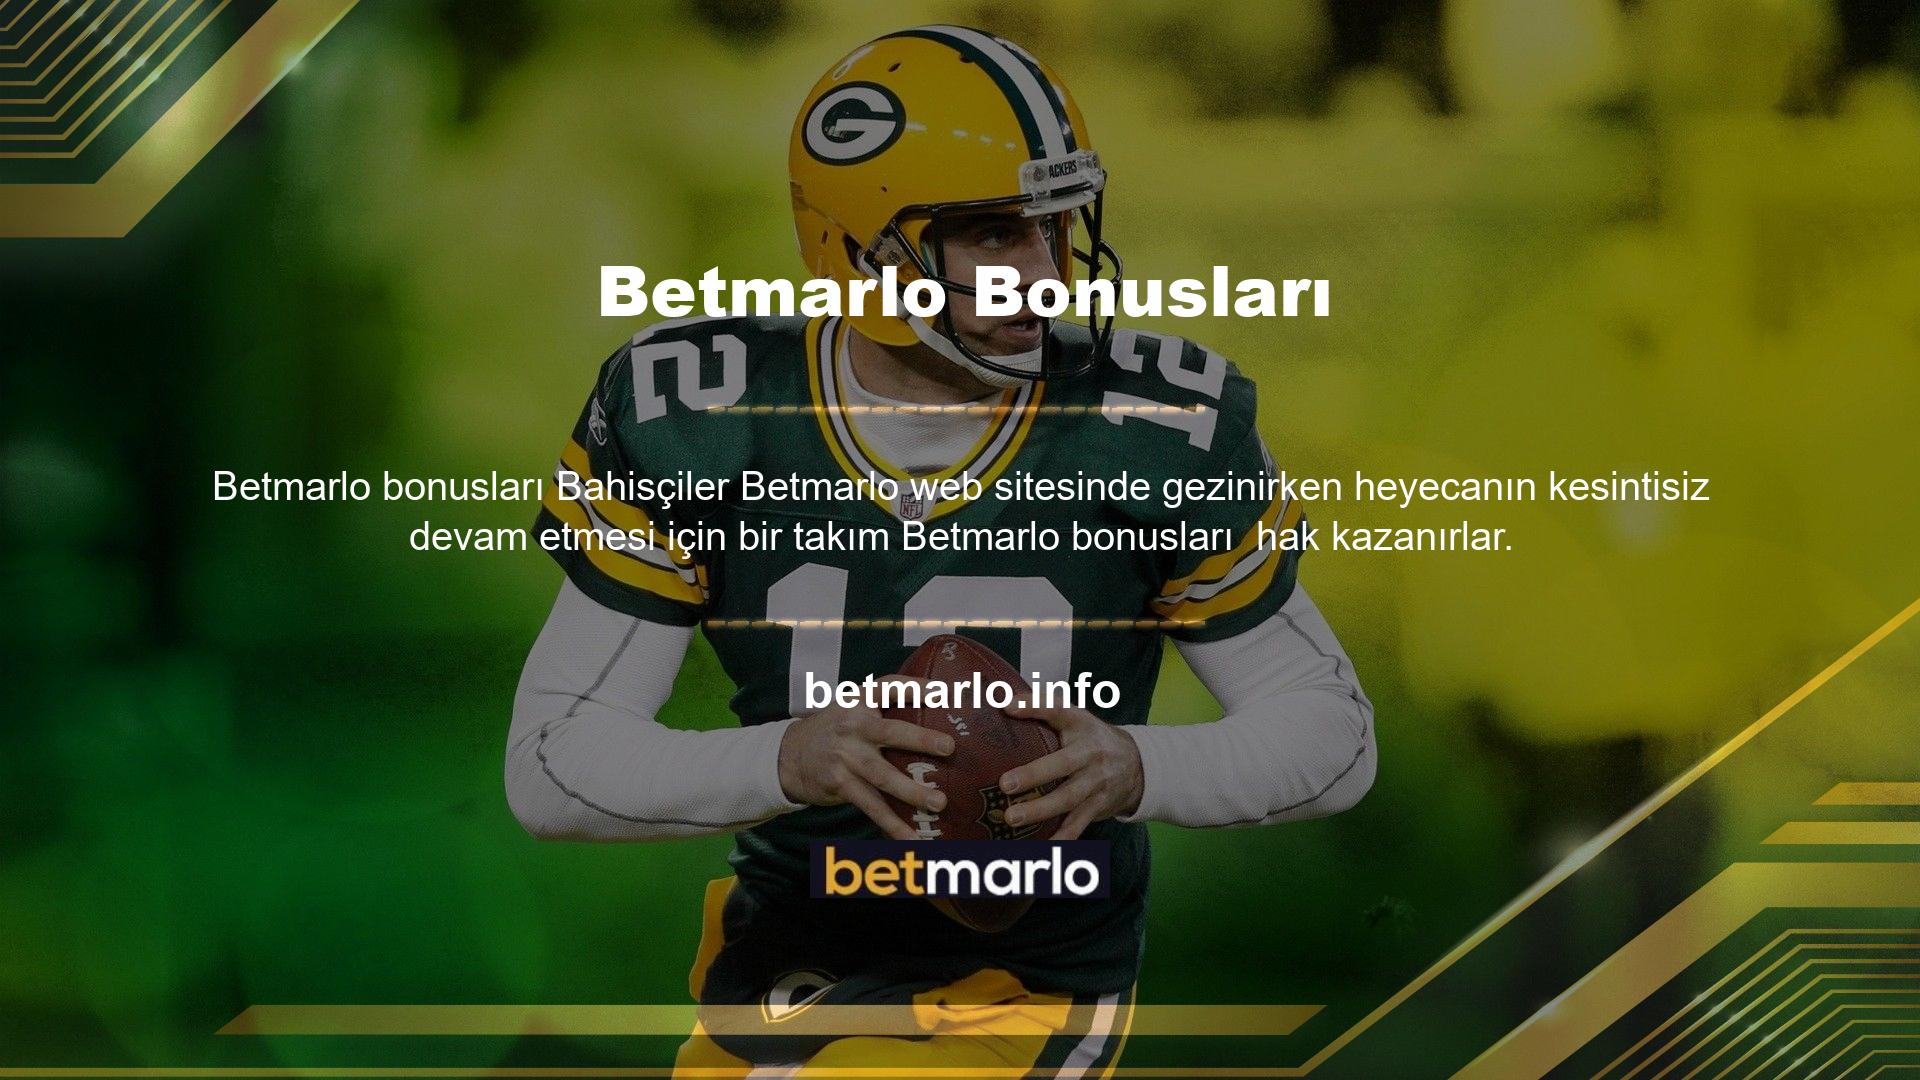 Siteye üye olarak kolayca Betmarlo bonusları bu bonuslar ile kazancınızı ikiye katlayabilirsiniz